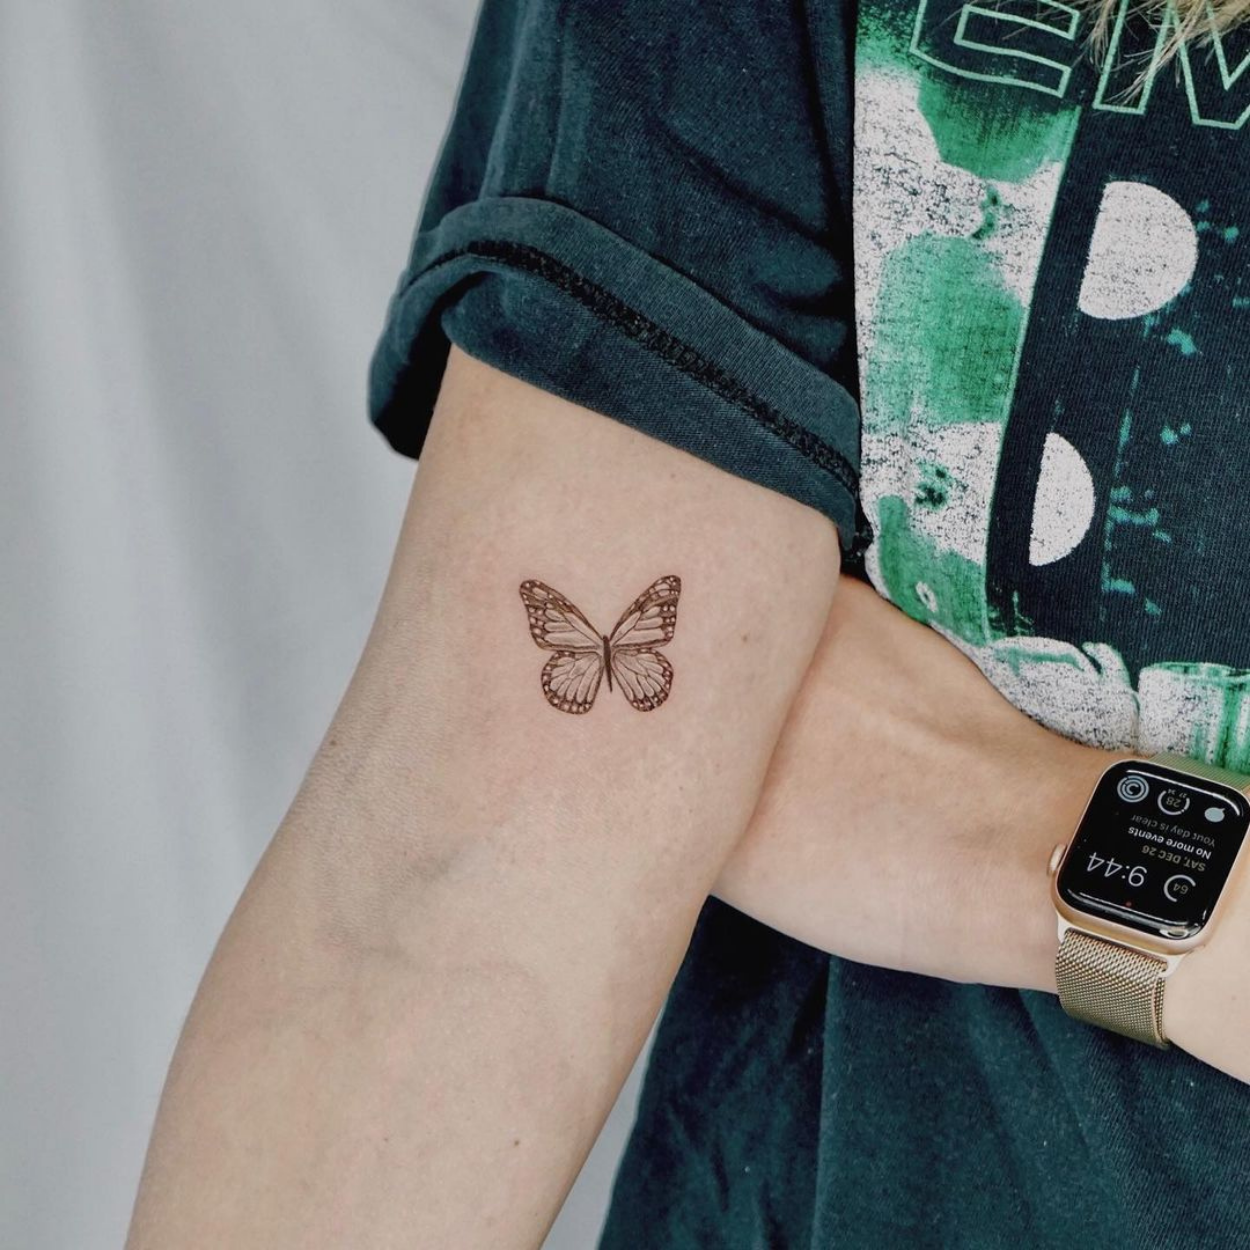 tatuagem de borboleta pequena no braço